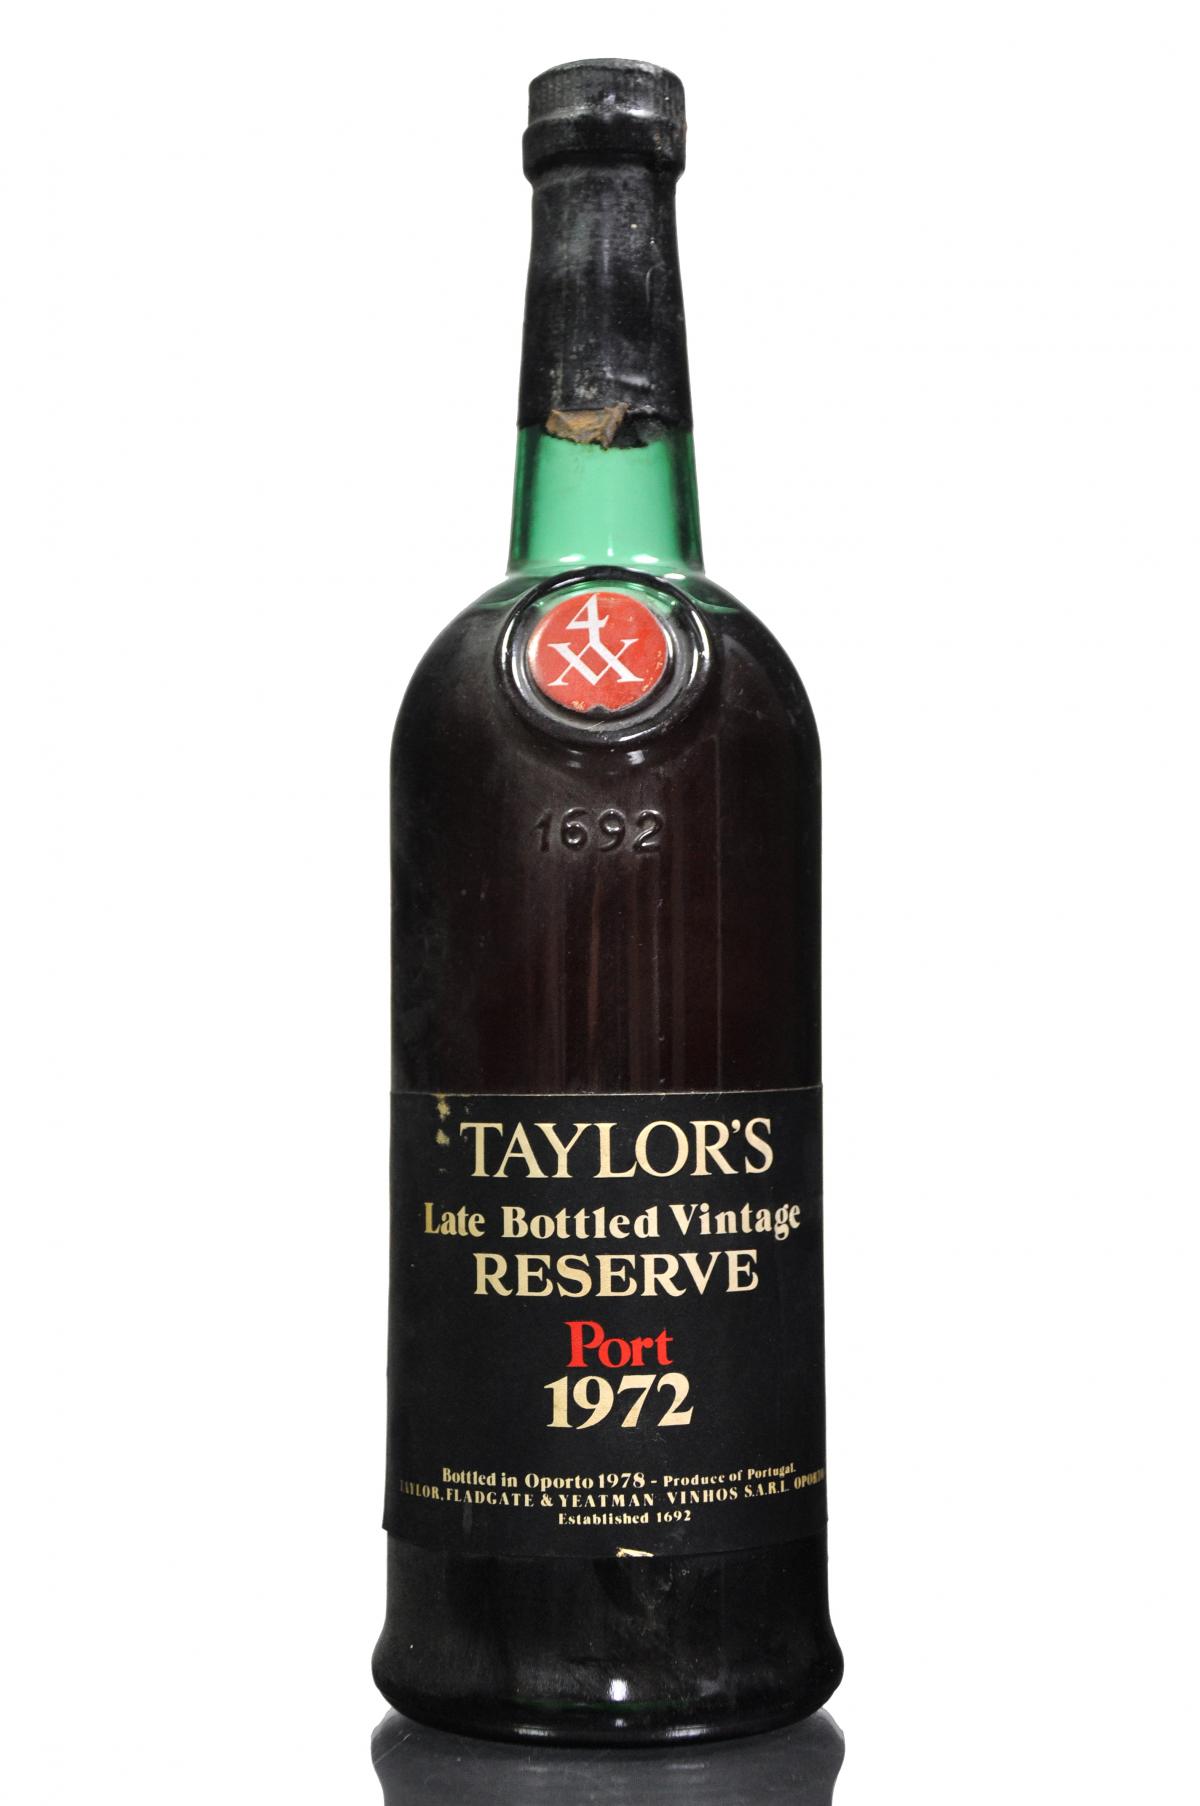 Taylors 1972 - Late Bottled Vintage Reserve Port